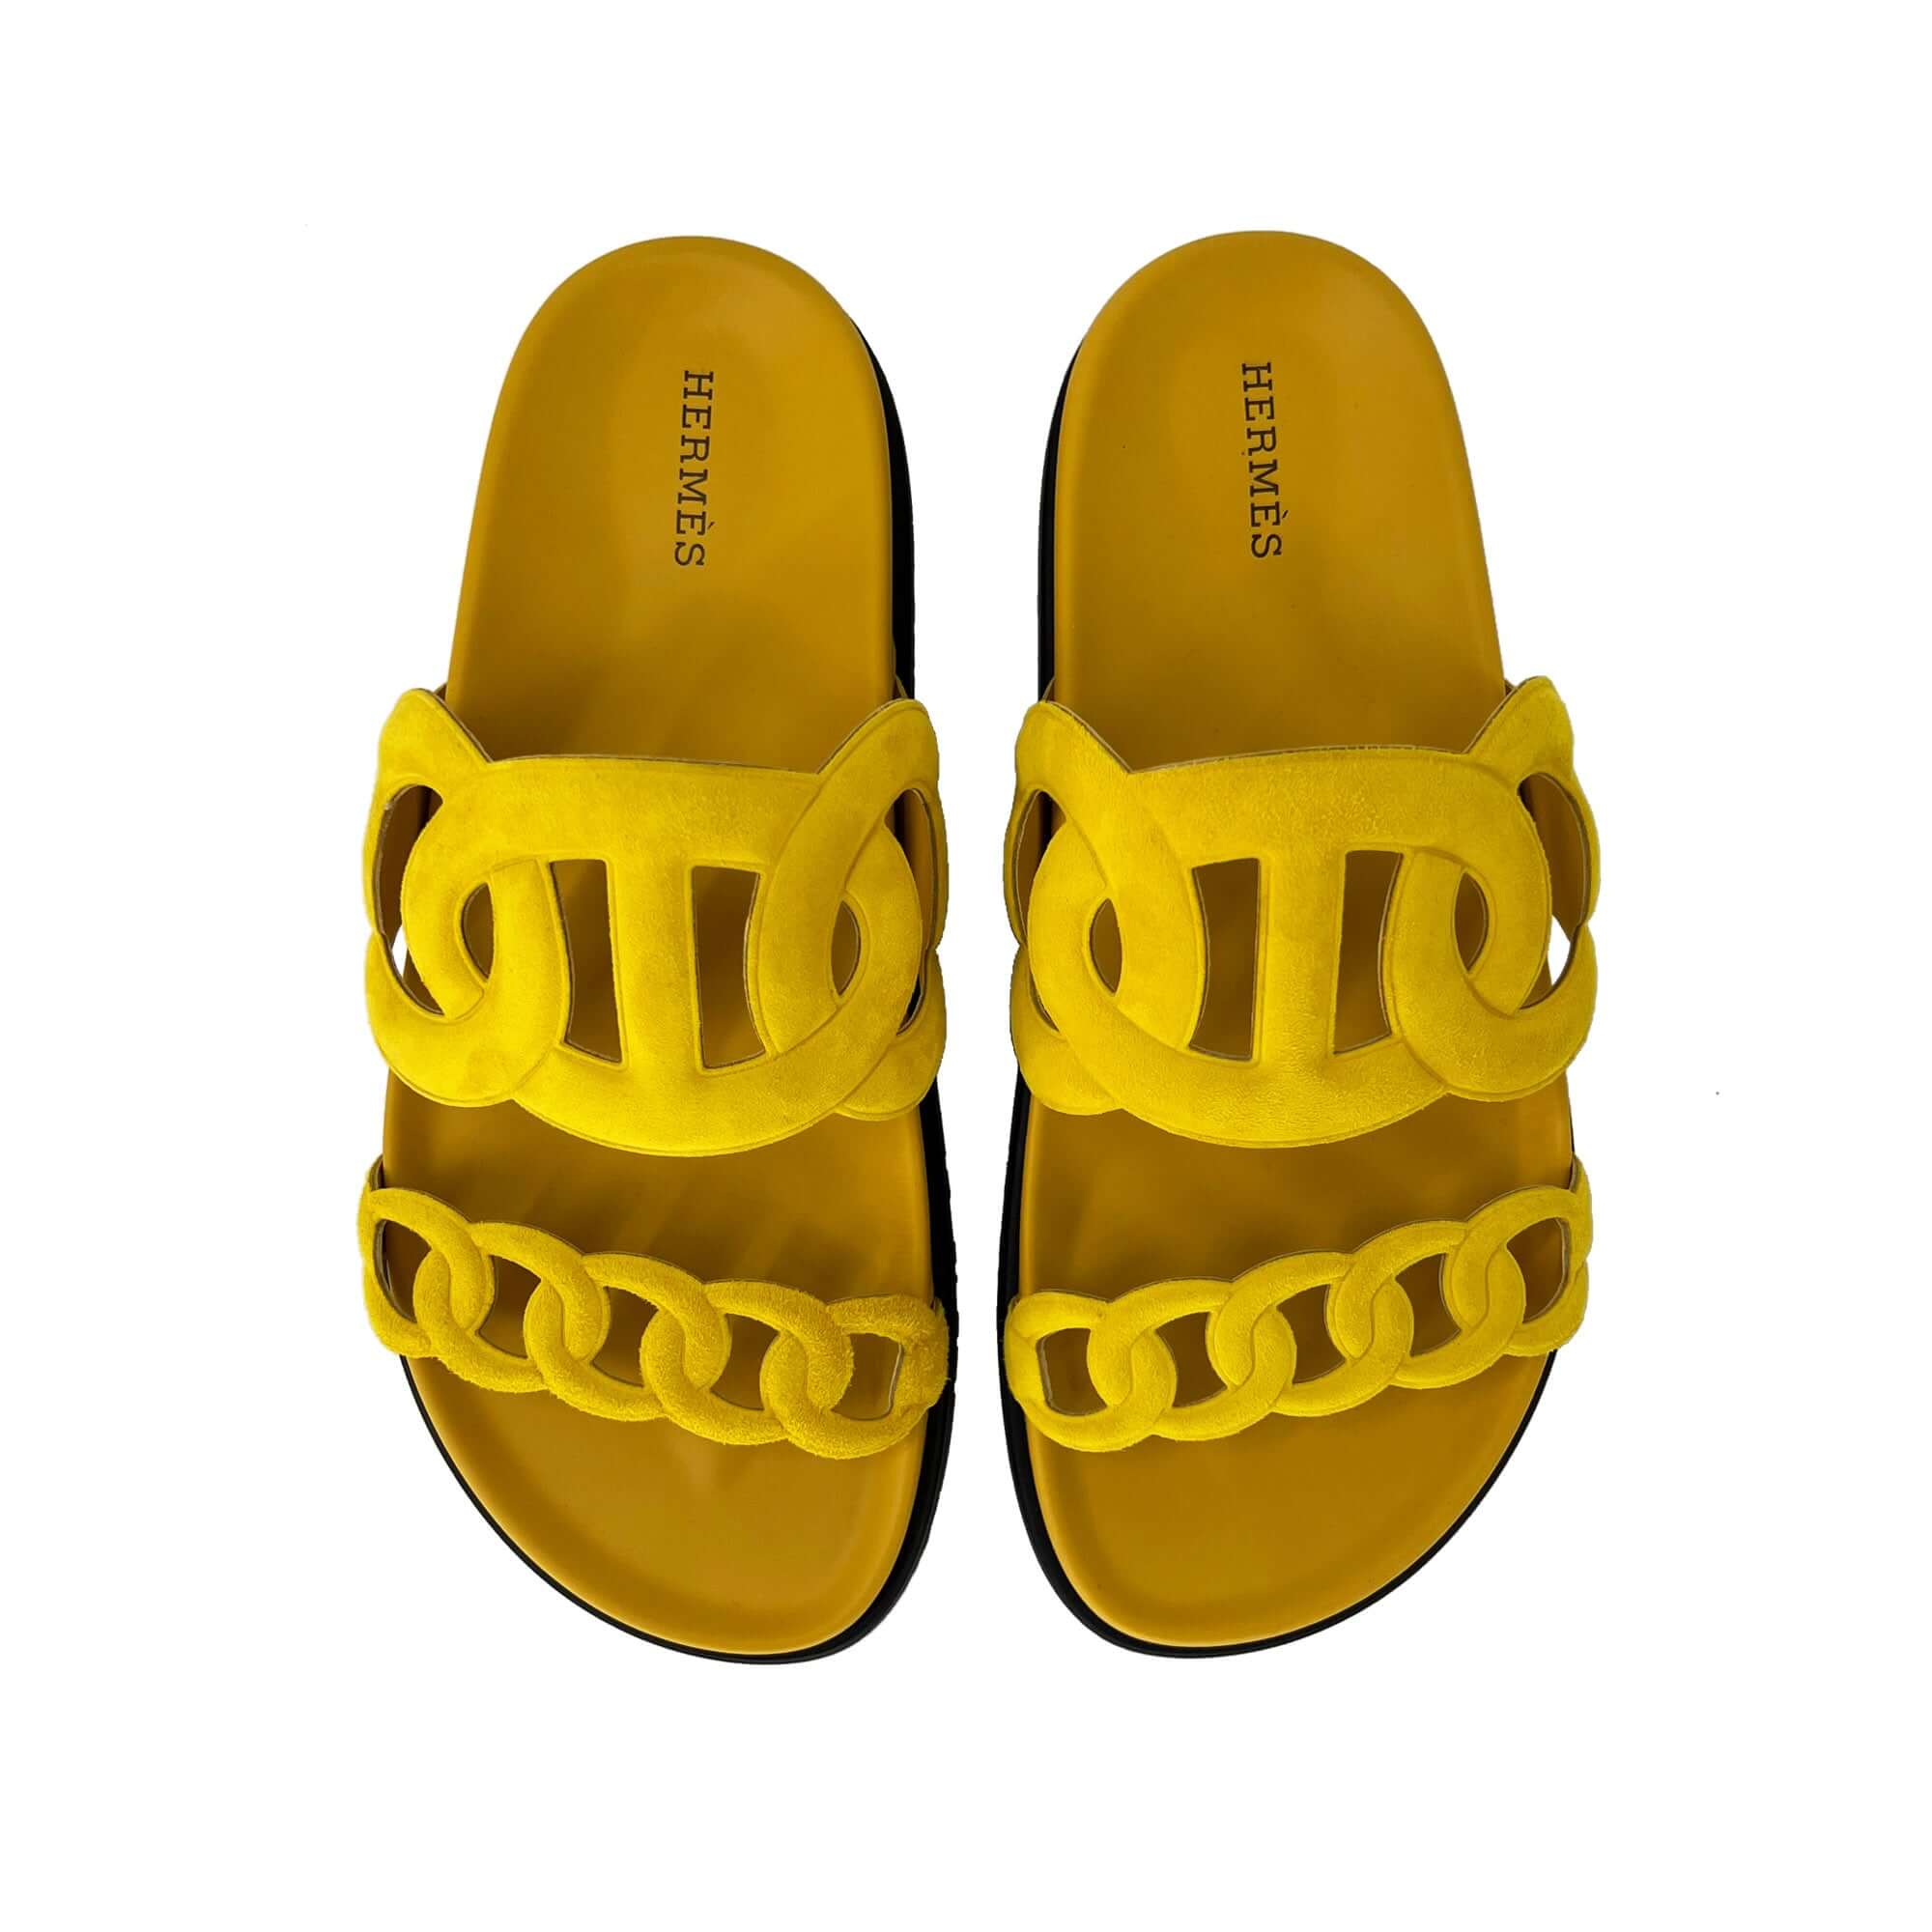 Hermes Extra Designer Sandals in yellow top